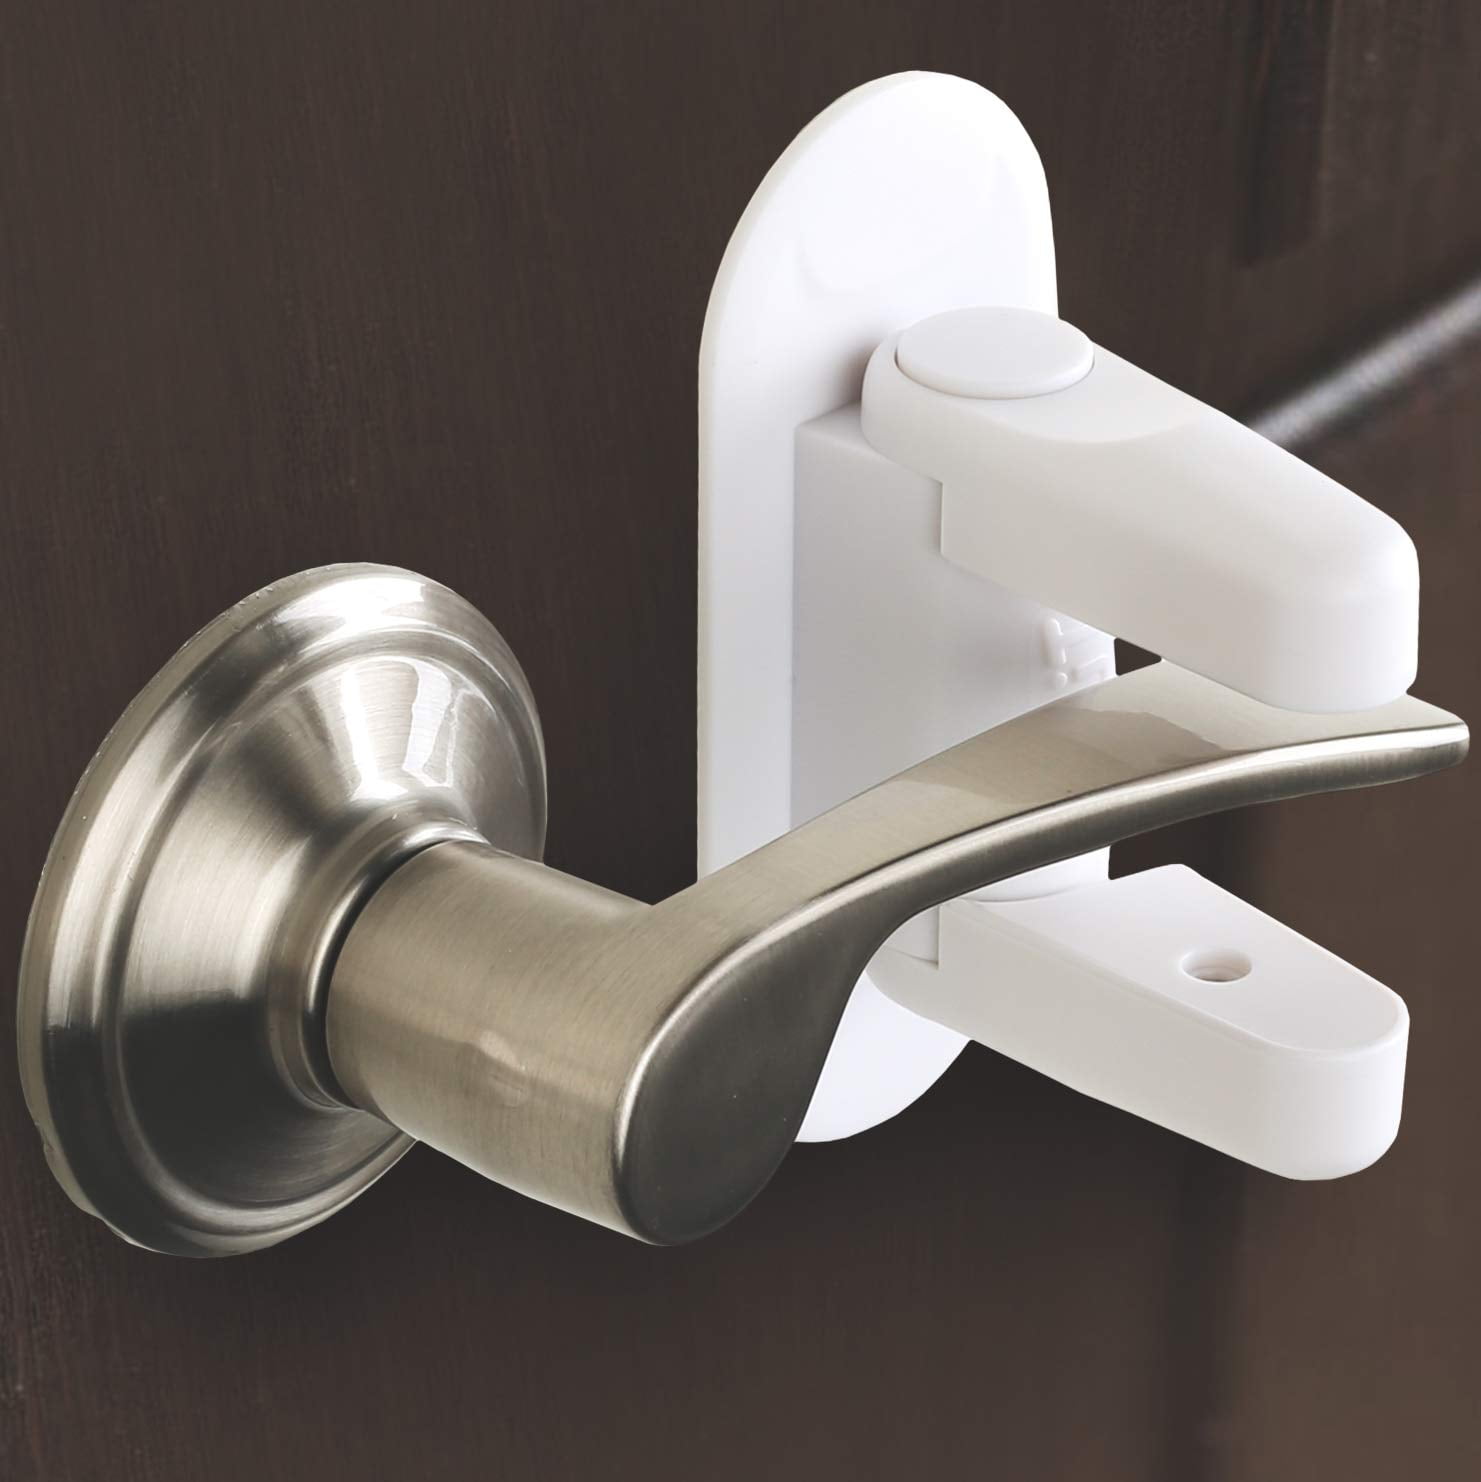 DOOR MONKEY Child Proof Door Lock & Pinch Guard - For Door Knobs